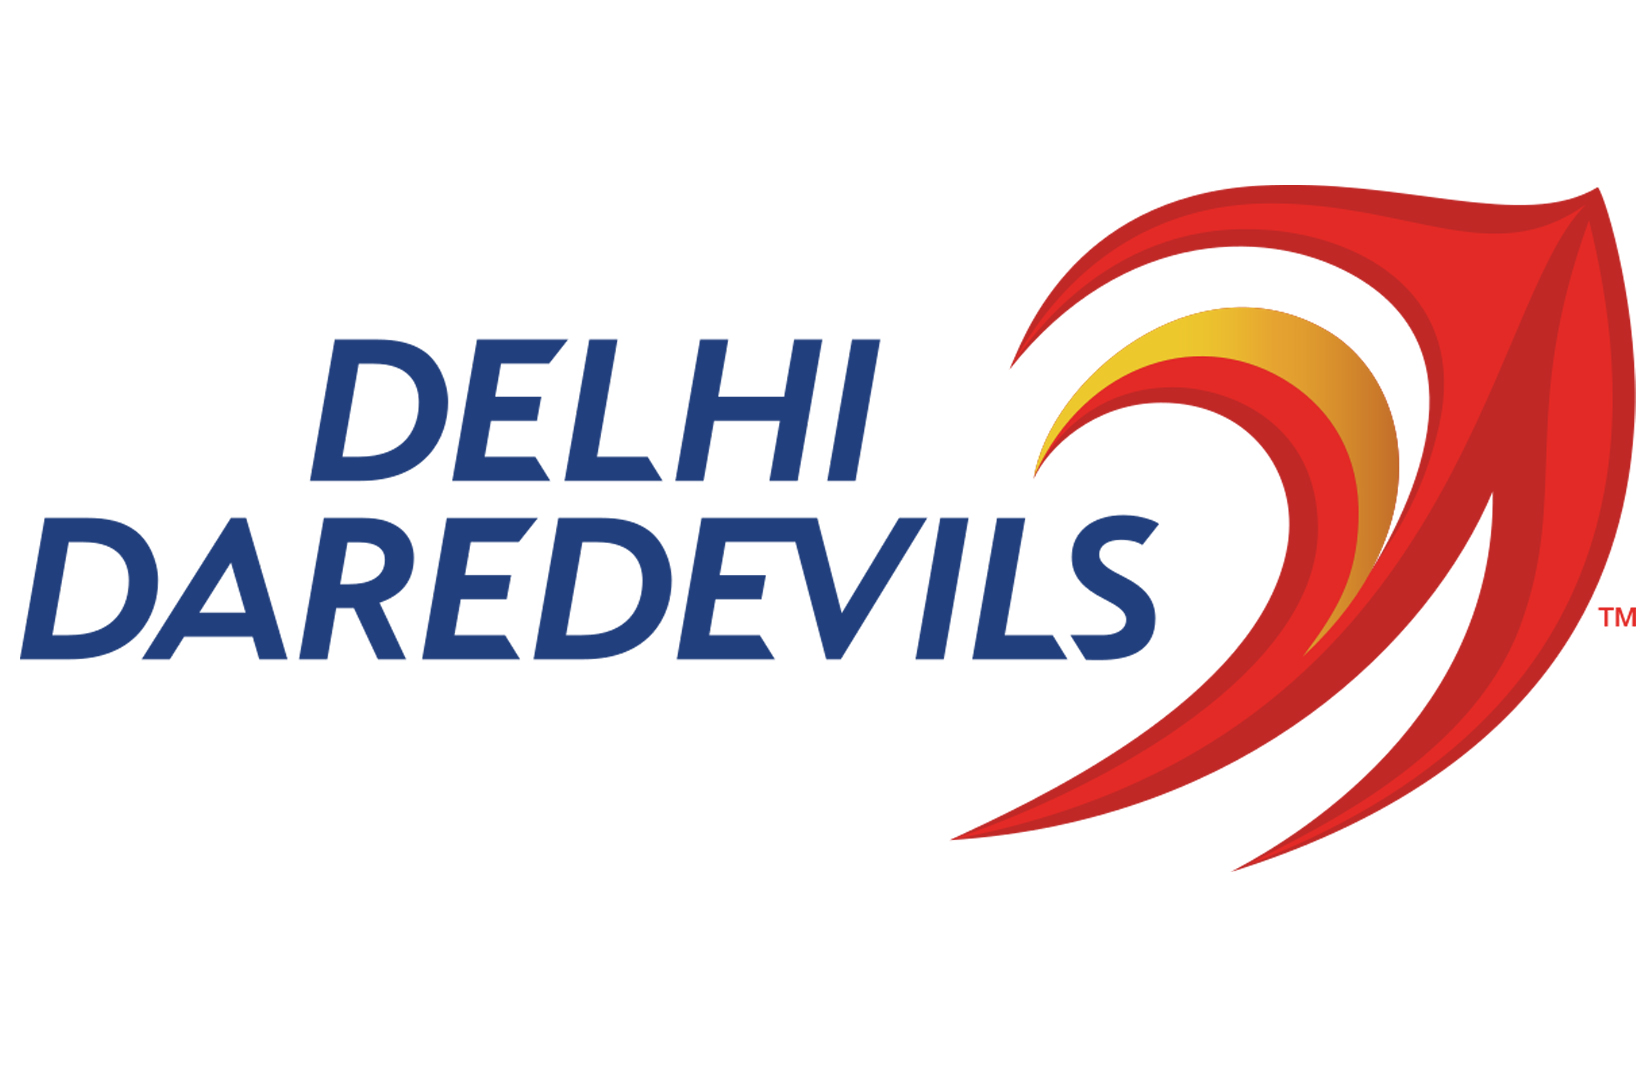 Delhi daredevil logo 2018